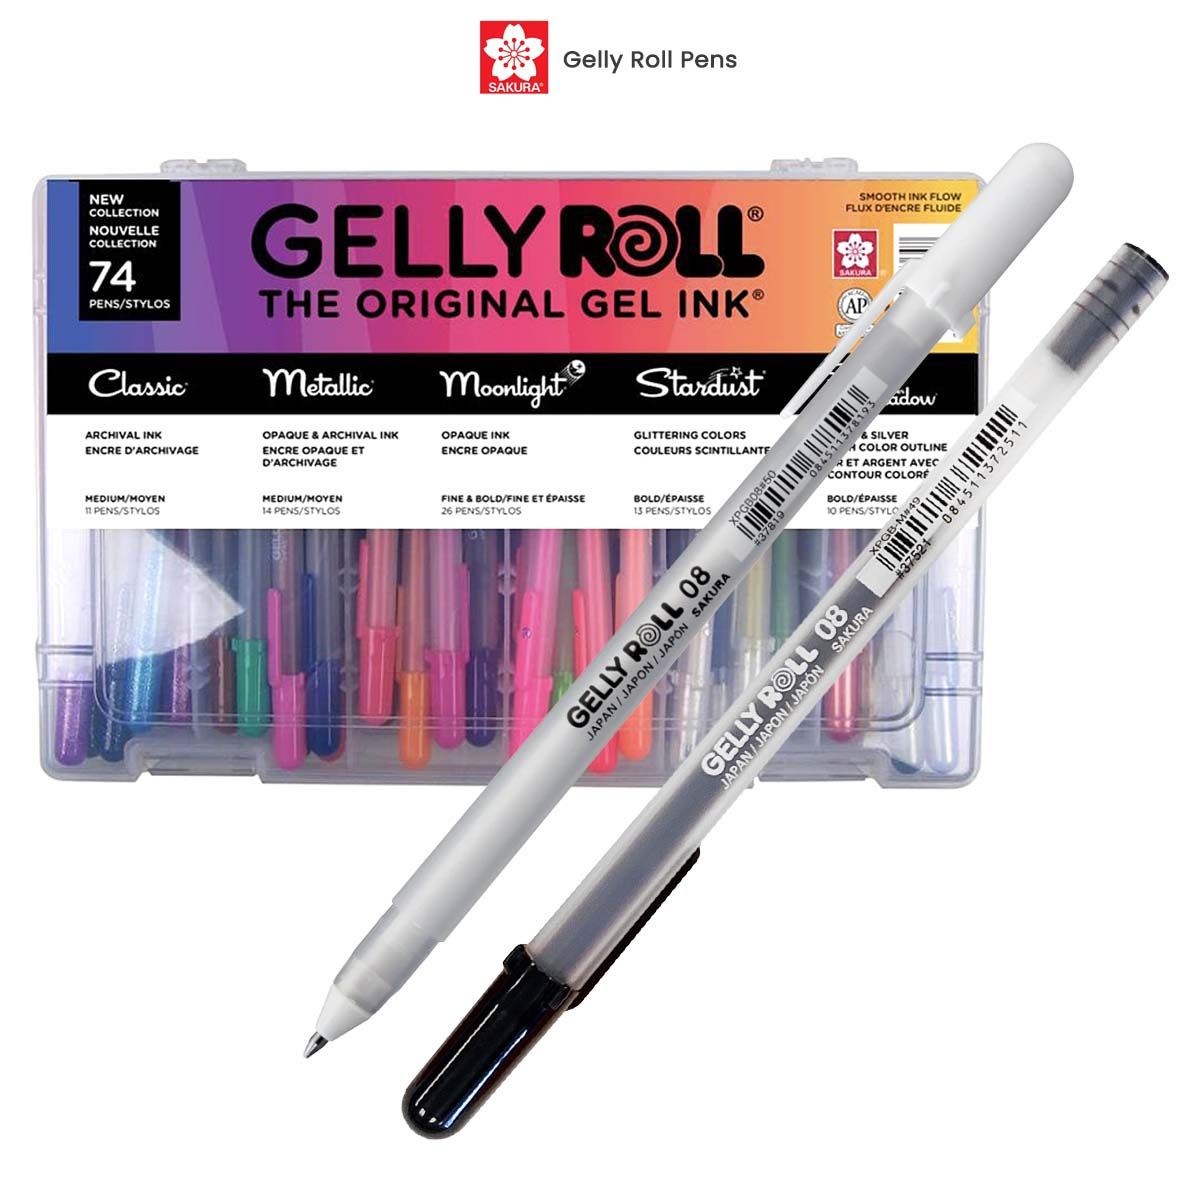 Wholesale Pentel Sign Pen w/ Brush Pastel Color Set A and Set B